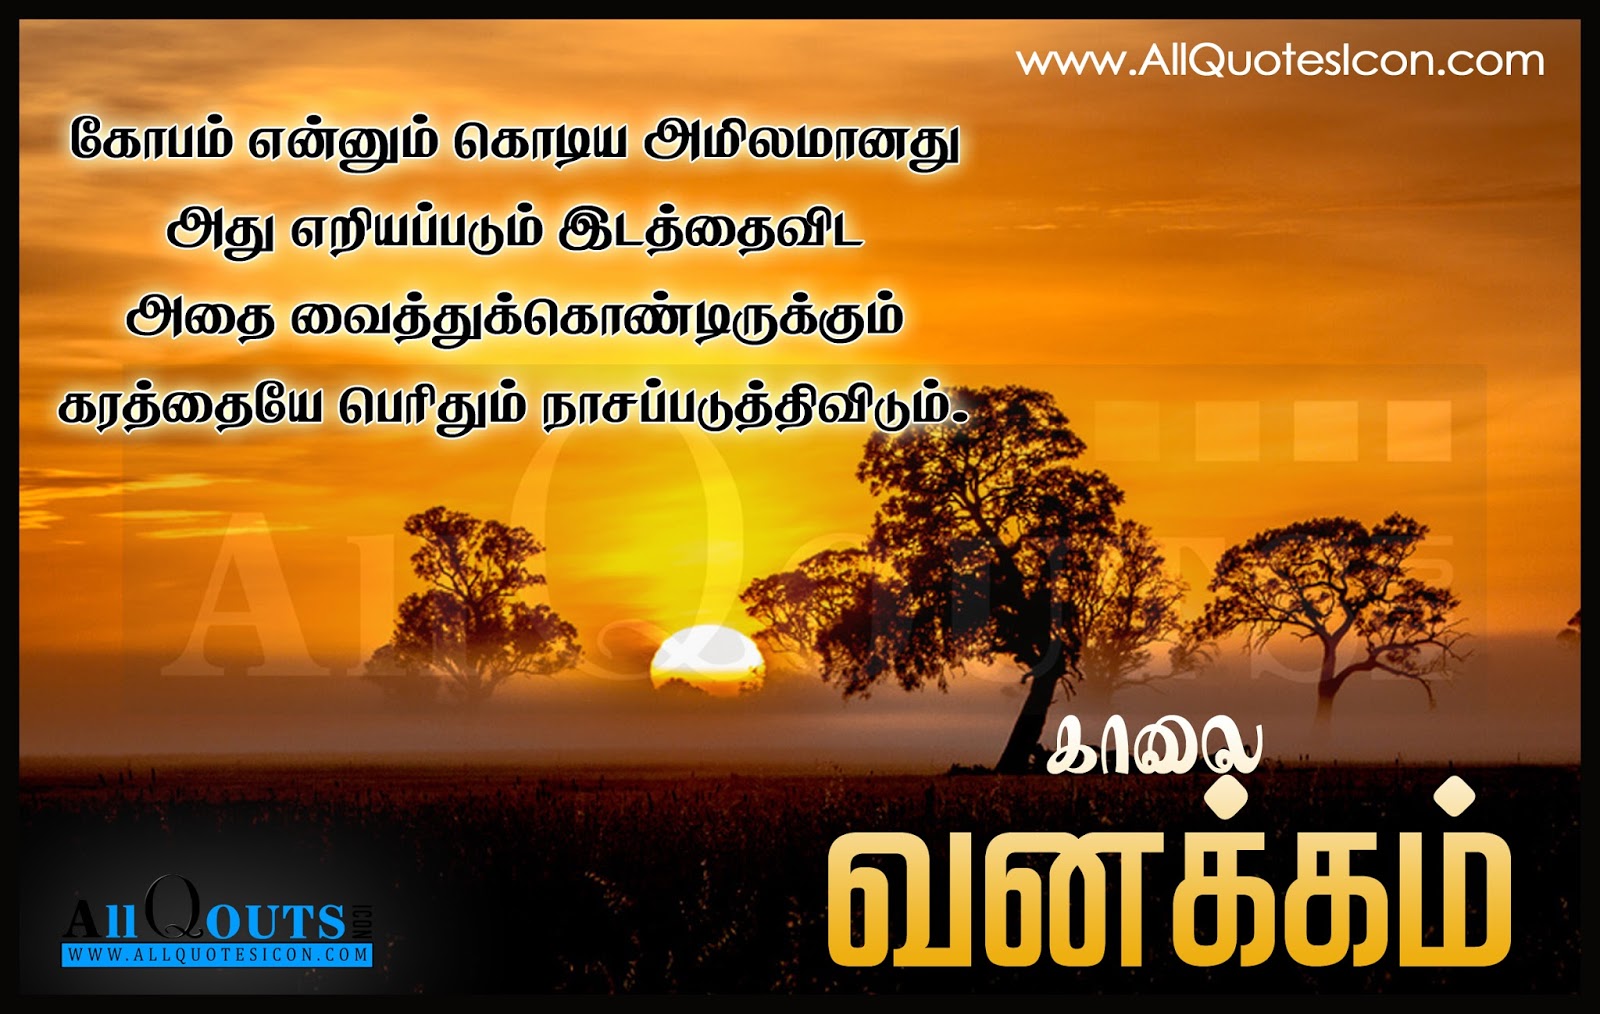 tamil wallpaper zitate,himmel,natürliche landschaft,text,morgen,sonnenaufgang